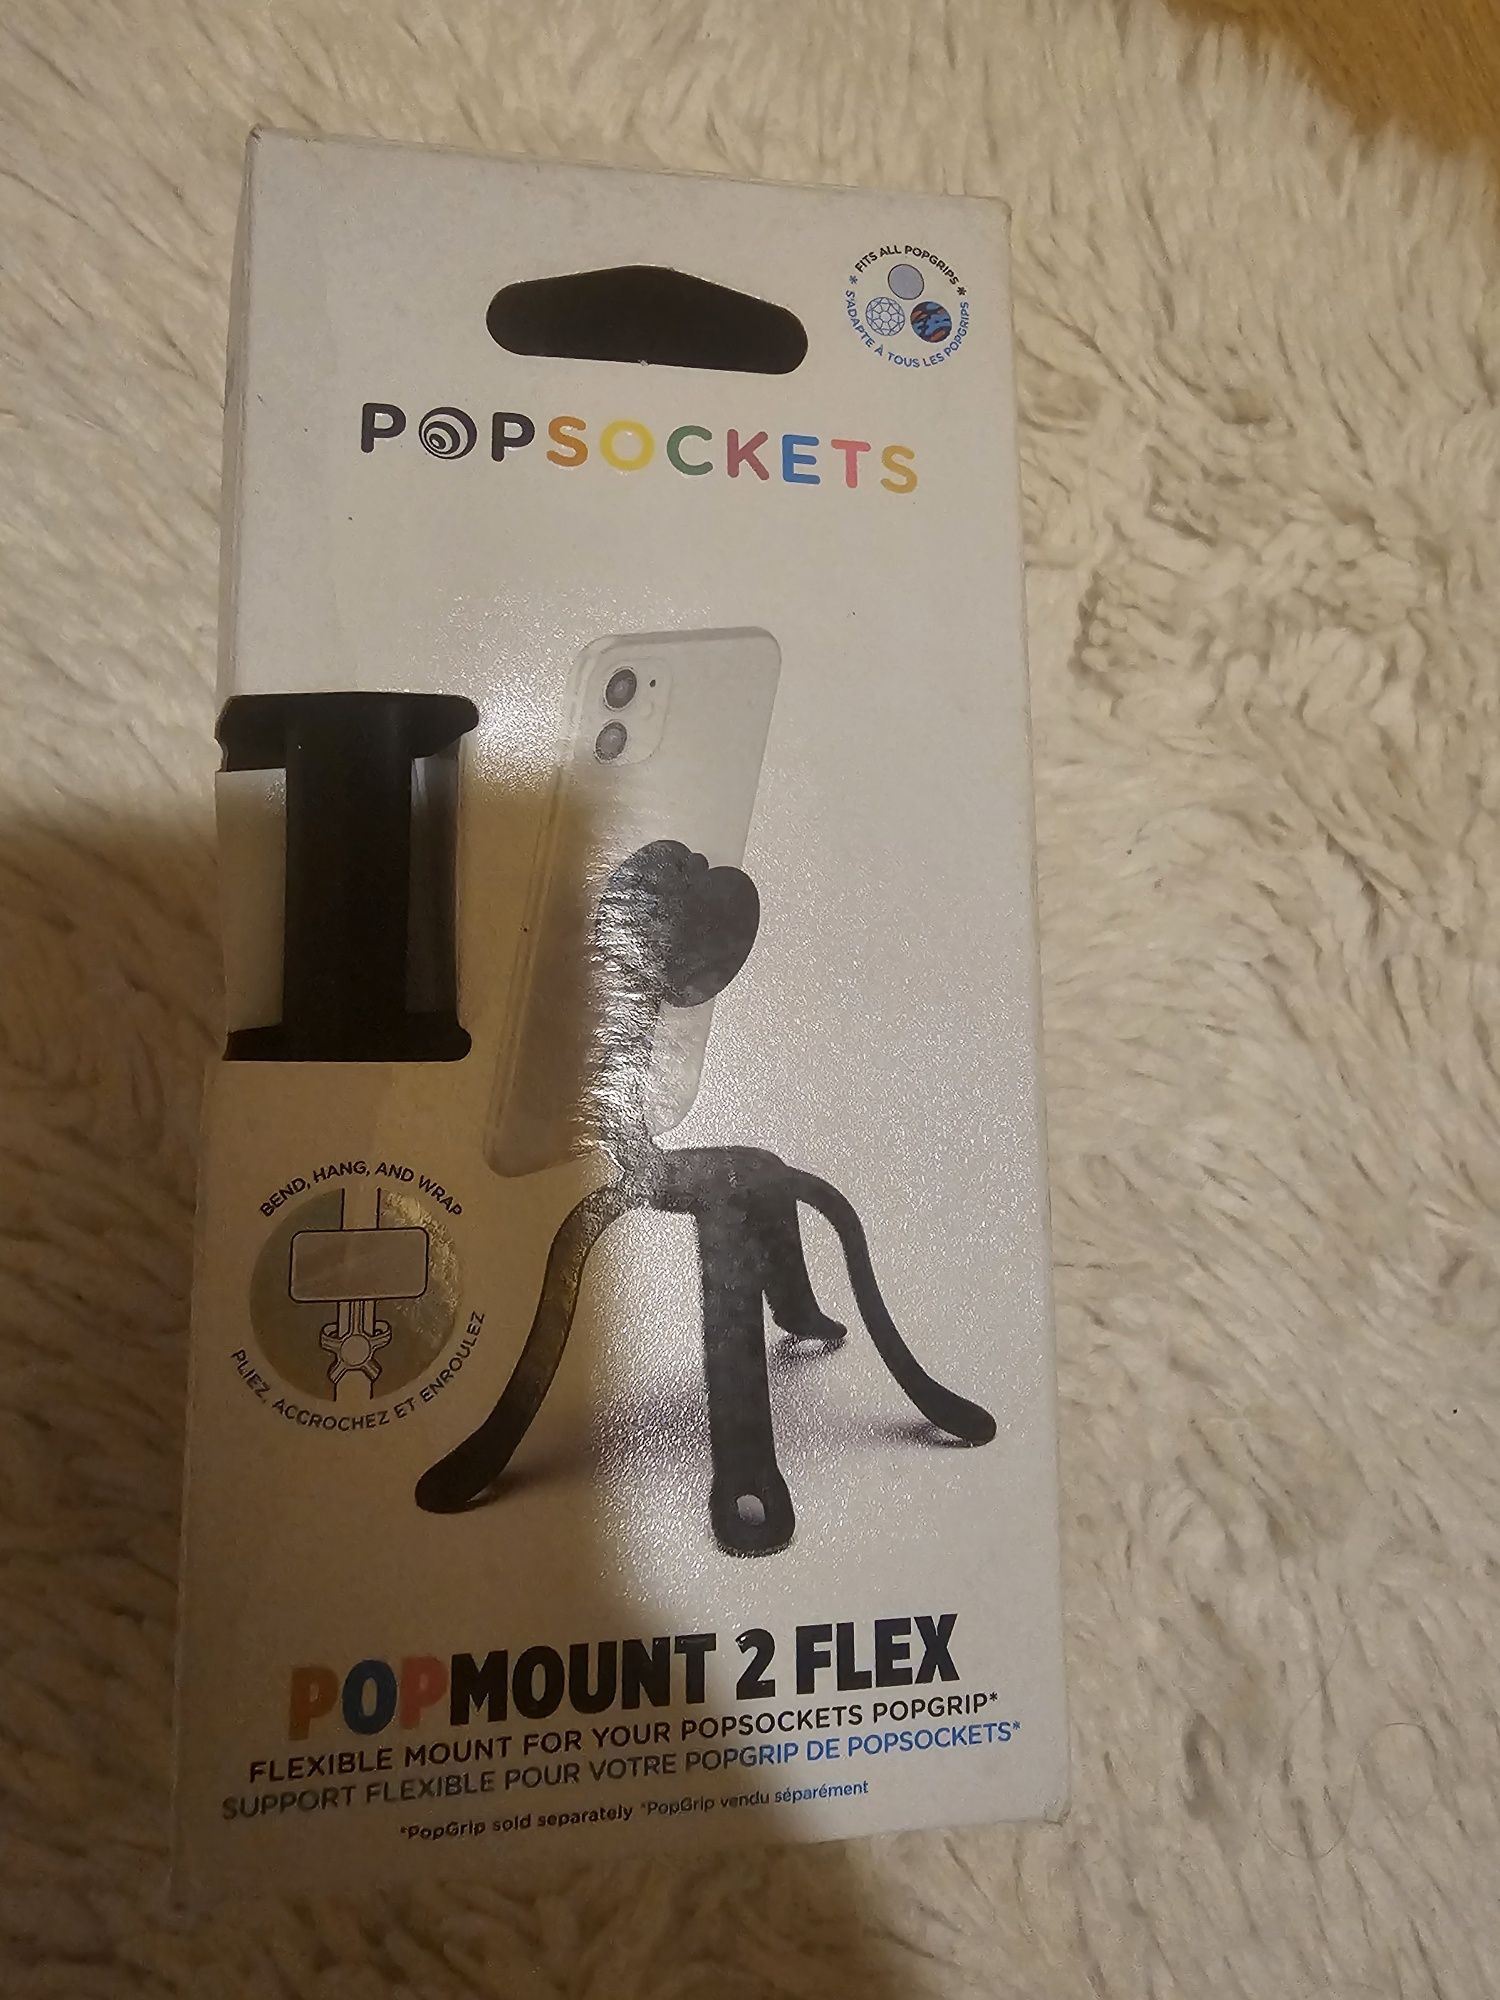 Popsockets Popmount 2 Flex